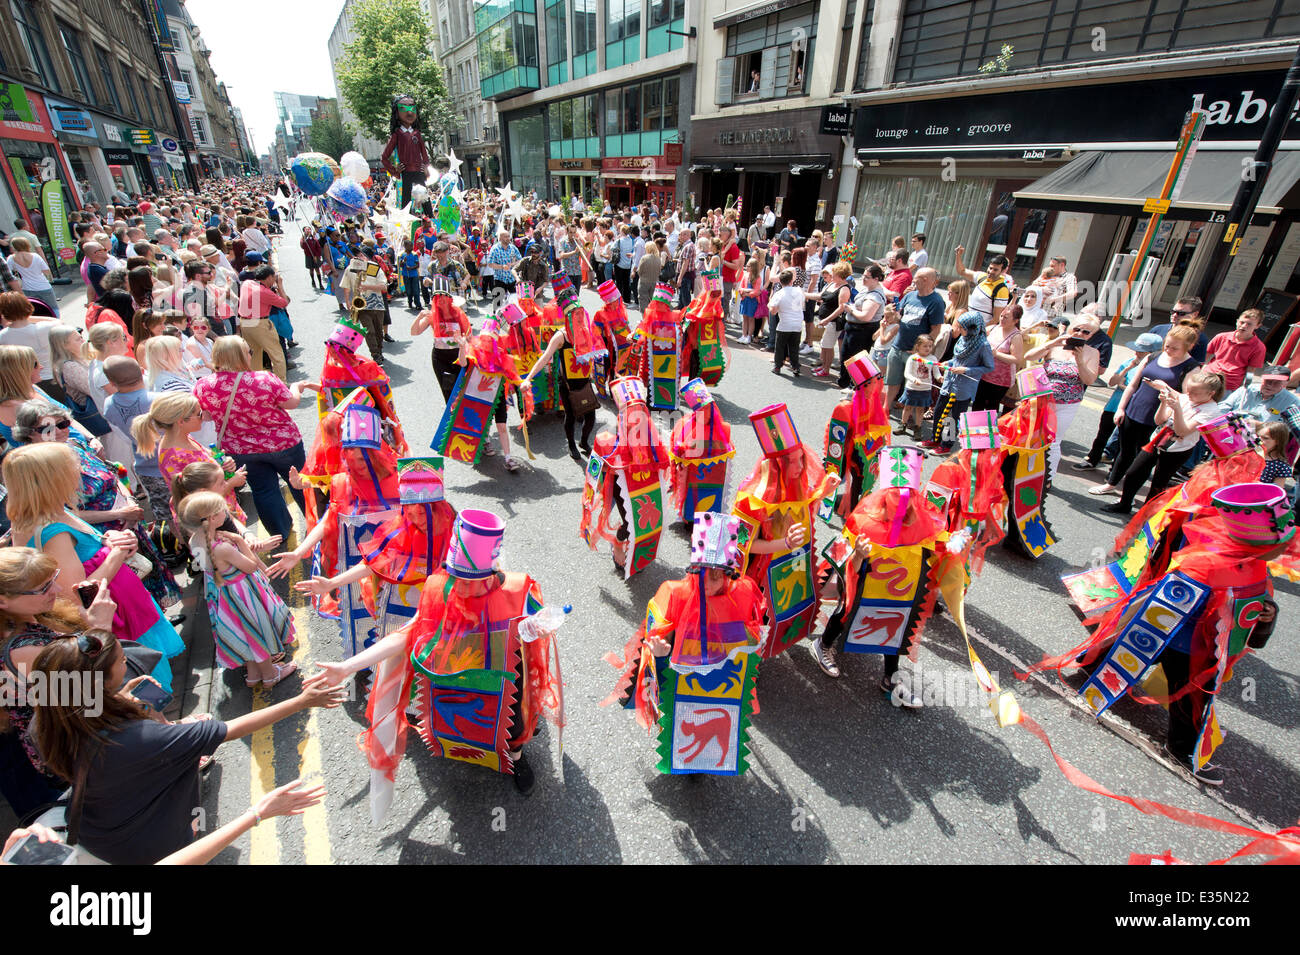 Manchester, UK. 22. Juni 2014. Tausende von Zuschauern genießen die Manchester-Day-Parade durch die Stadt. Jedes Jahr feiert die Veranstaltung alles toll über Manchester. Das Thema für 2014 wird "Going global" Credit: Russell Hart/Alamy Live News. Stockfoto